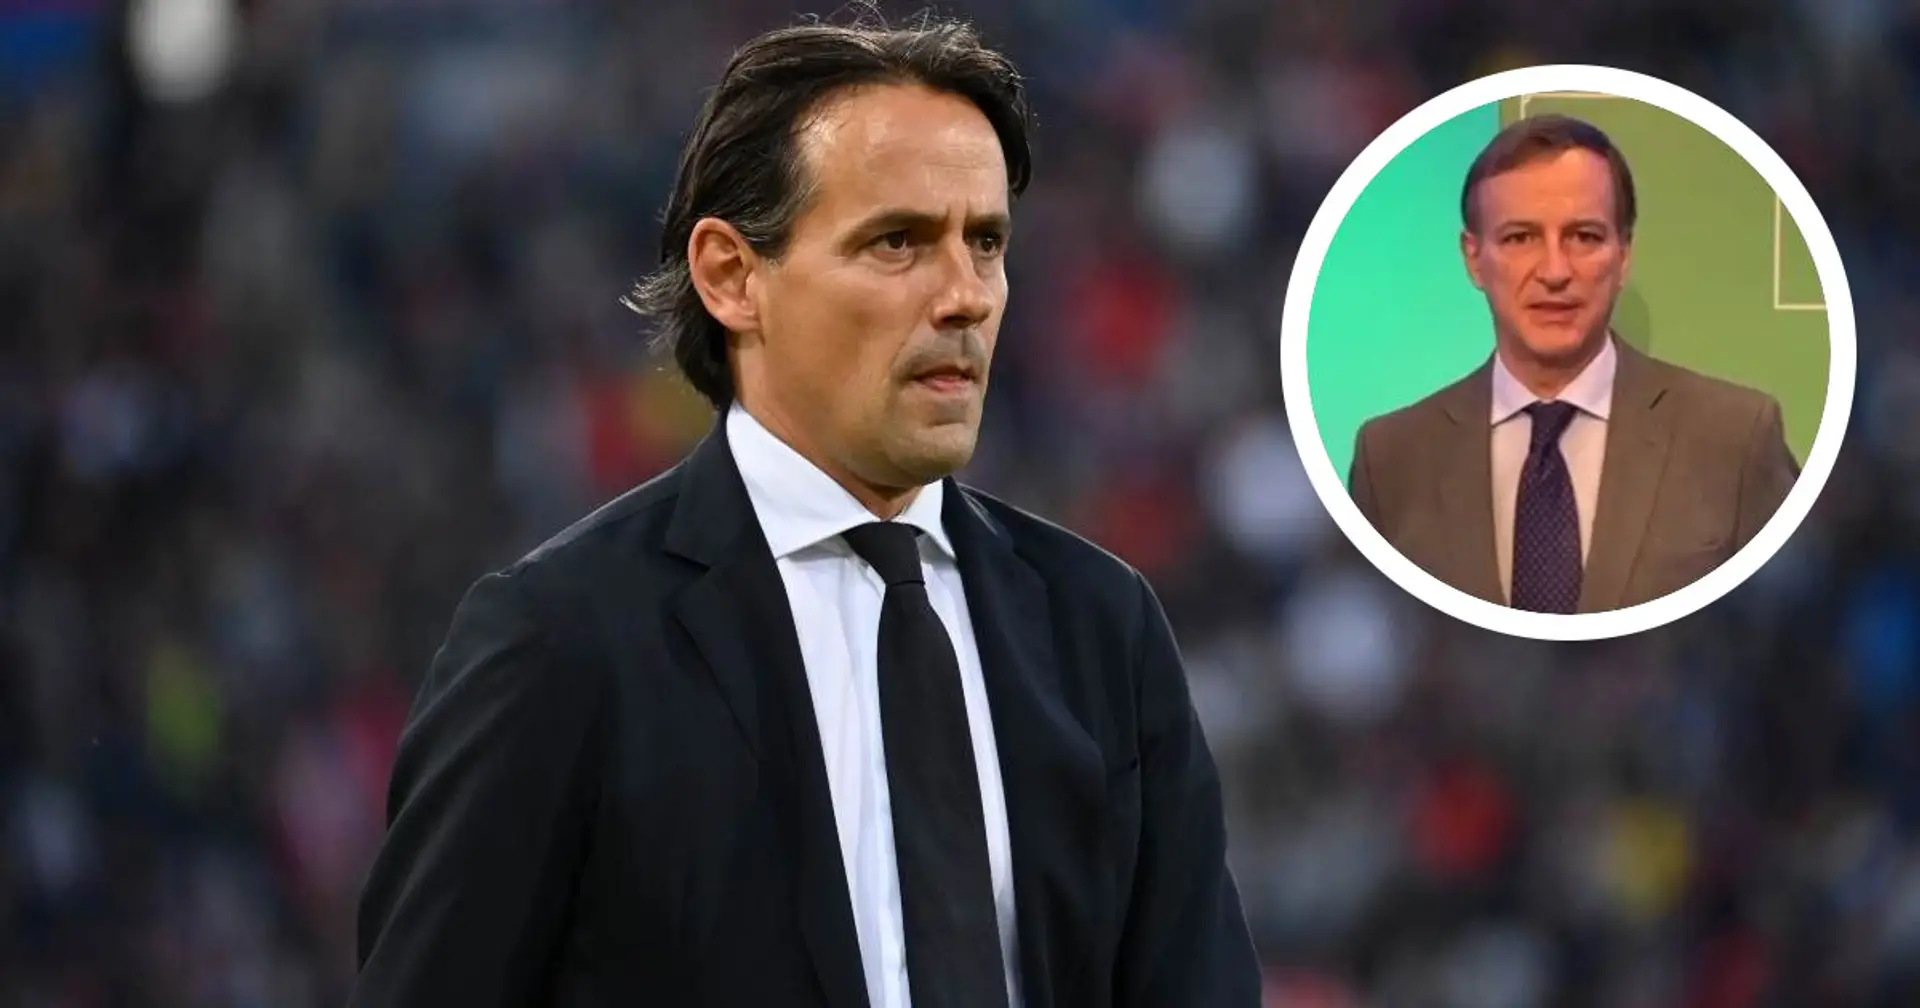 “Inzaghi ha solo una grave colpa”, Ravezzani spiega qual è stato l’errore commesso dal tecnico all’Inter